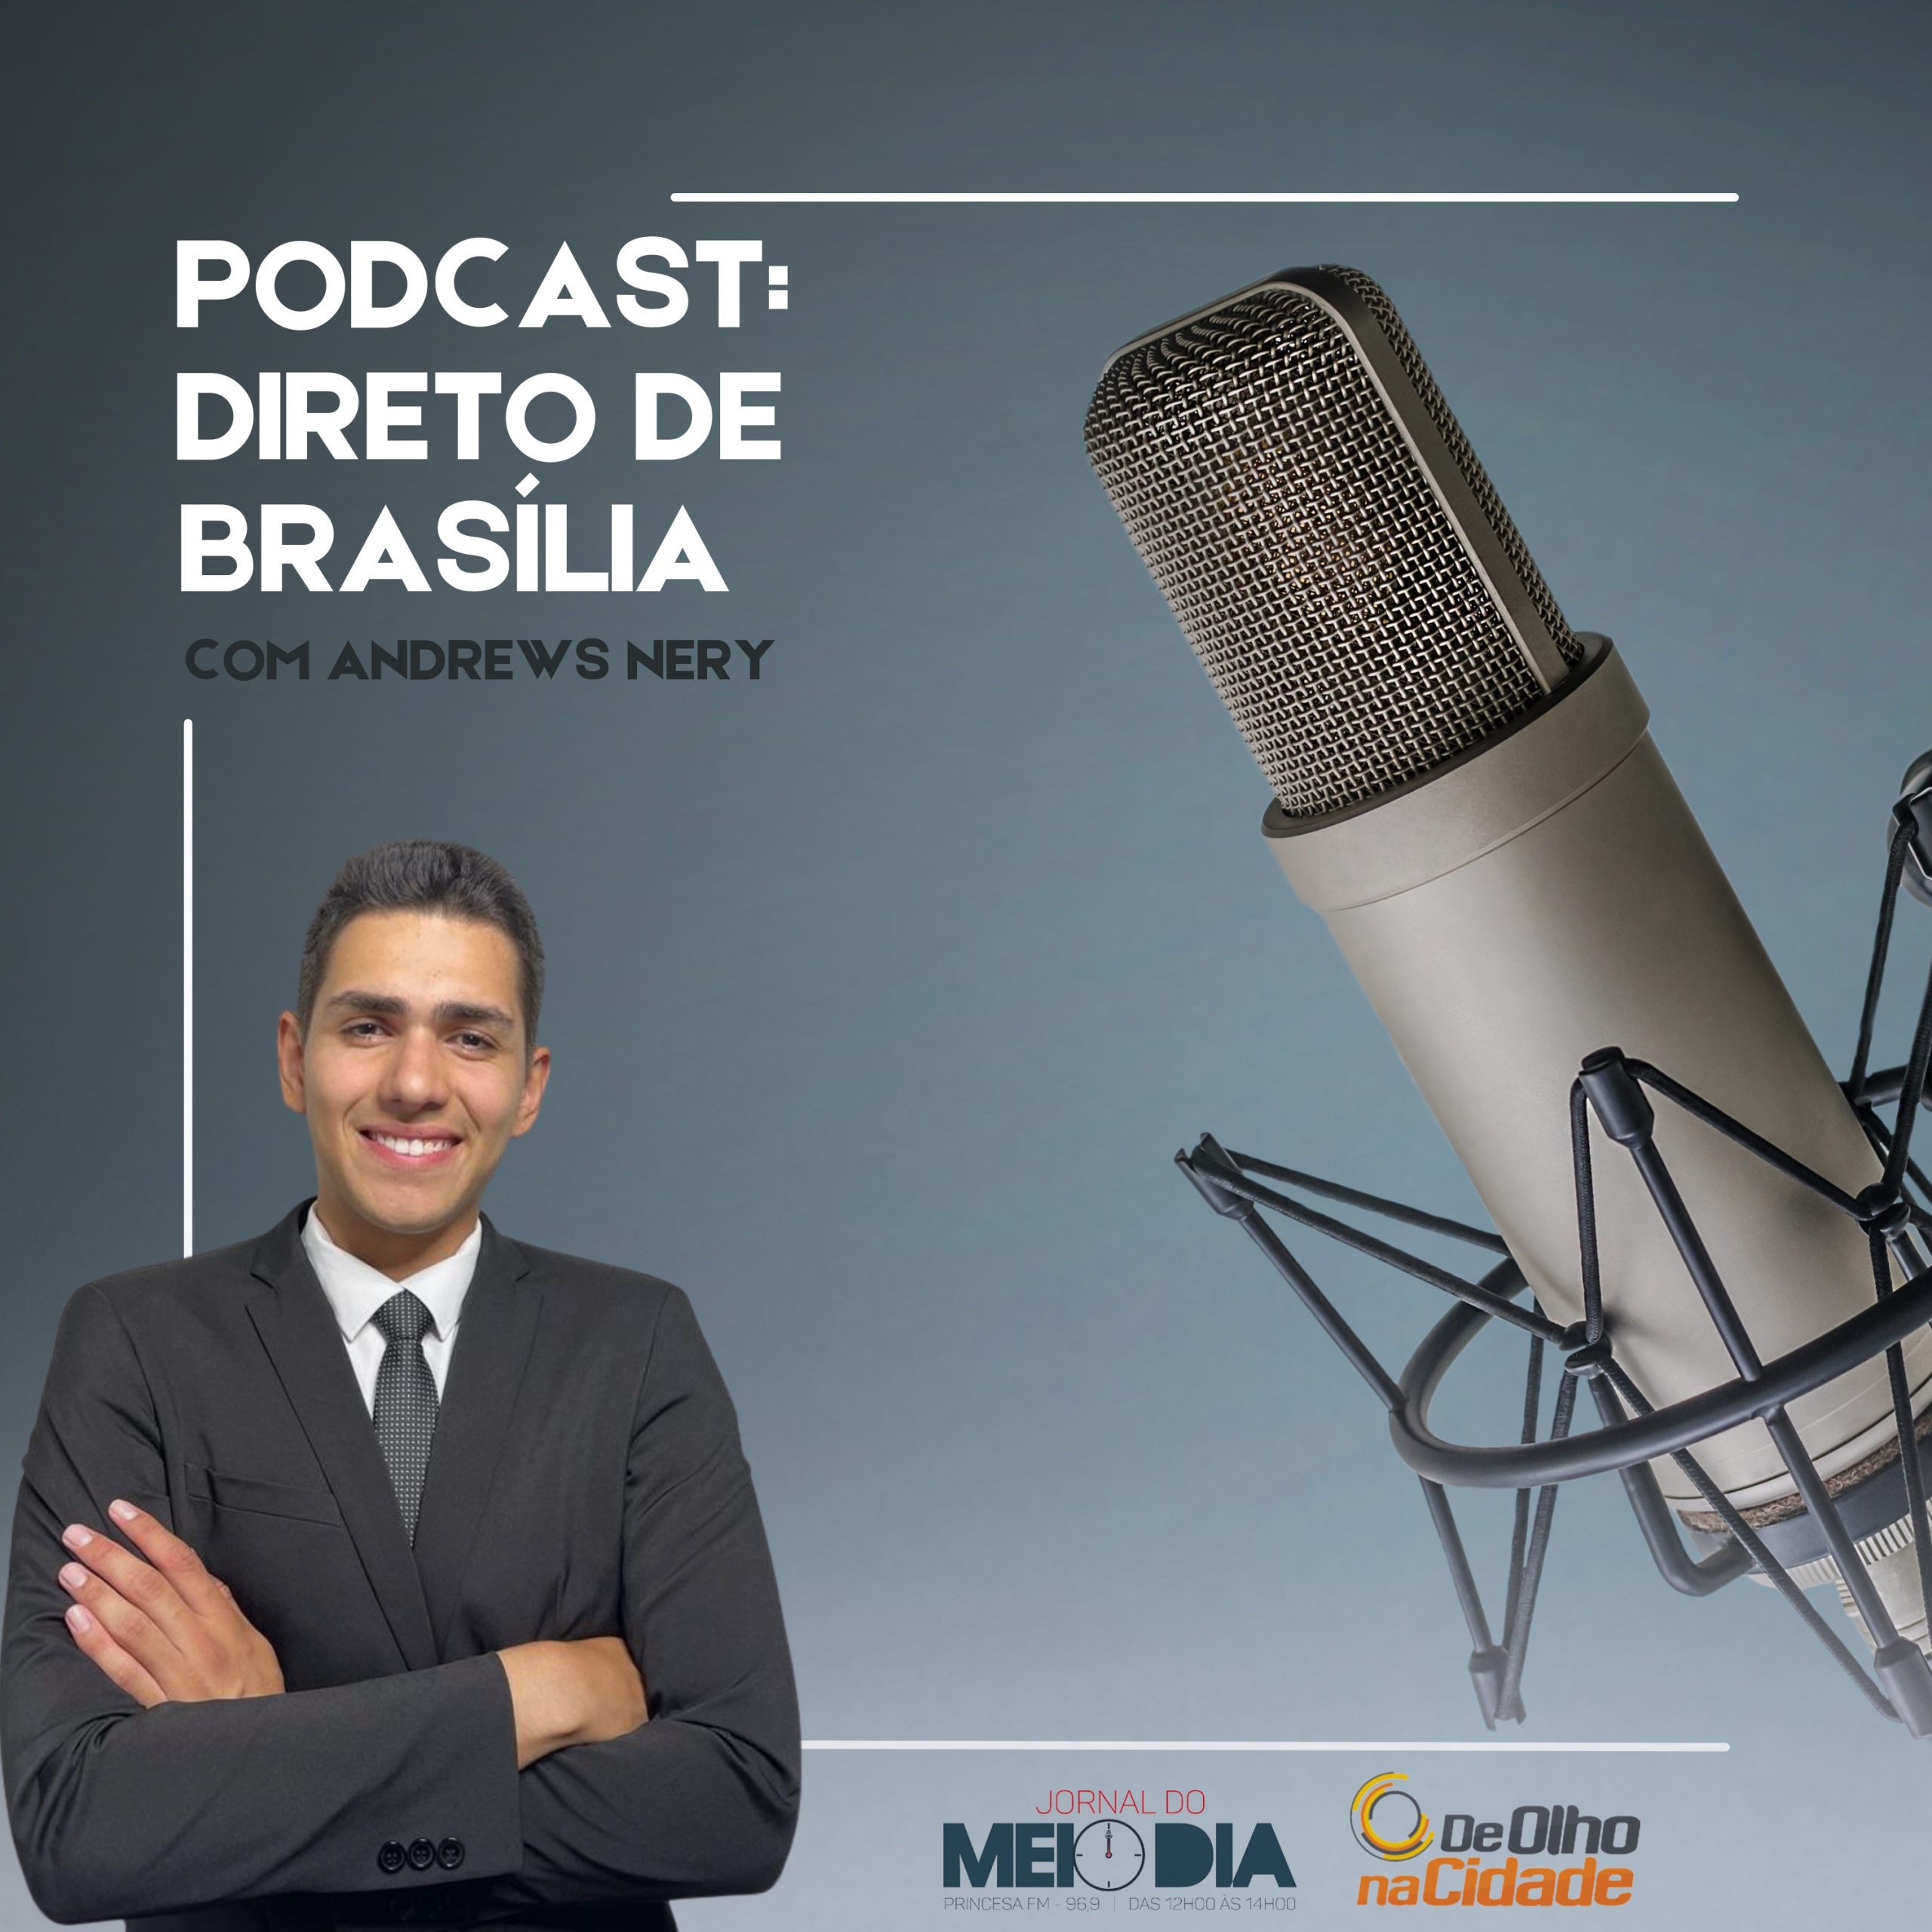 Podcast: Direto de Brasília com Andrews Nery (23/03)